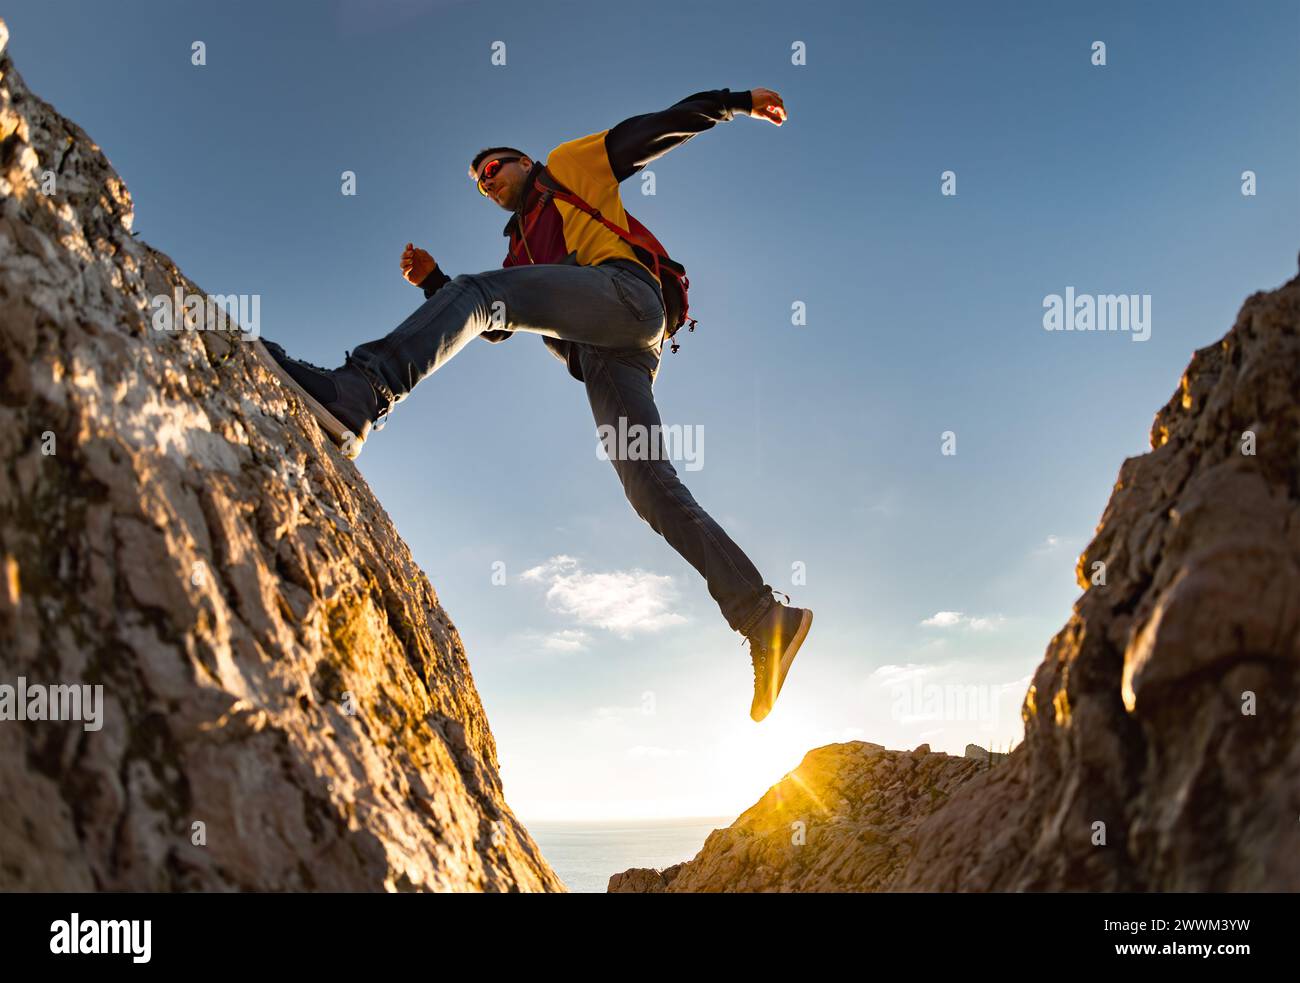 Junger sportlicher Wanderer mit Rucksack springt gegen den Sonnenuntergangshimmel auf den großen Felsen. Aktives Lifestyle-Konzept Stockfoto